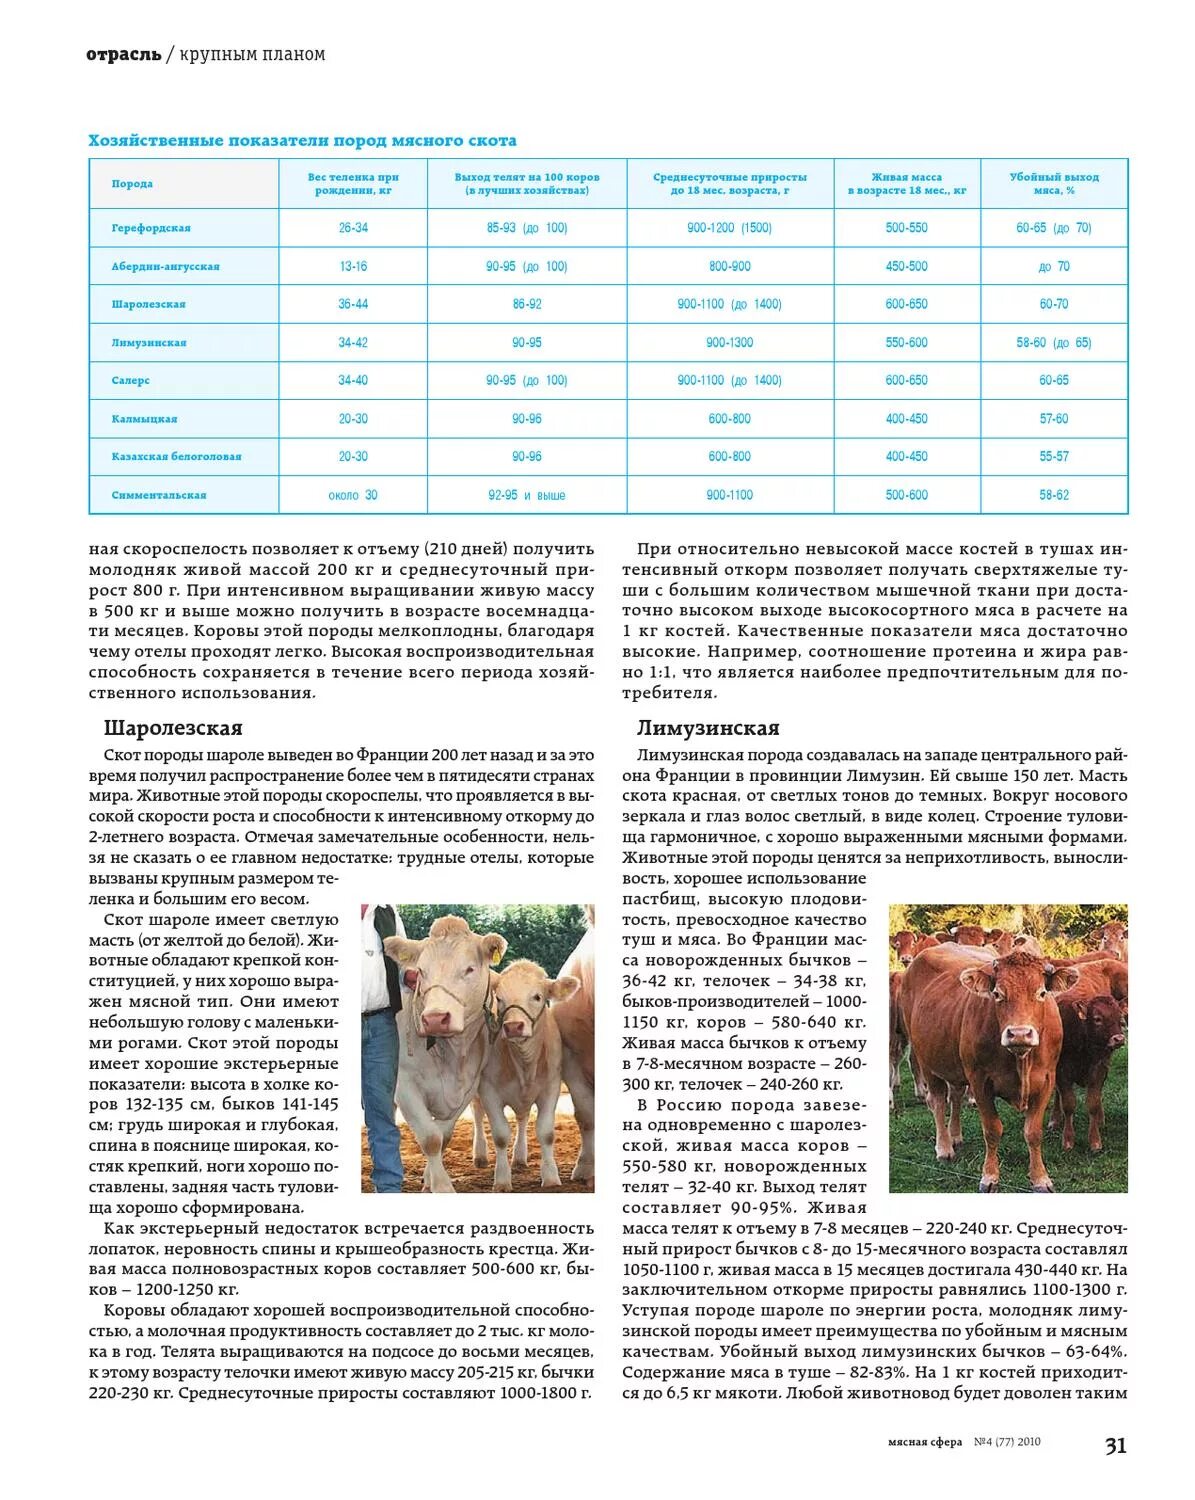 Живой вес теленка. Вес коровы. Мясная продуктивность породы Шароле. Живая масса телят мясных пород. Породы КРС мясной продуктивности и их показатели.